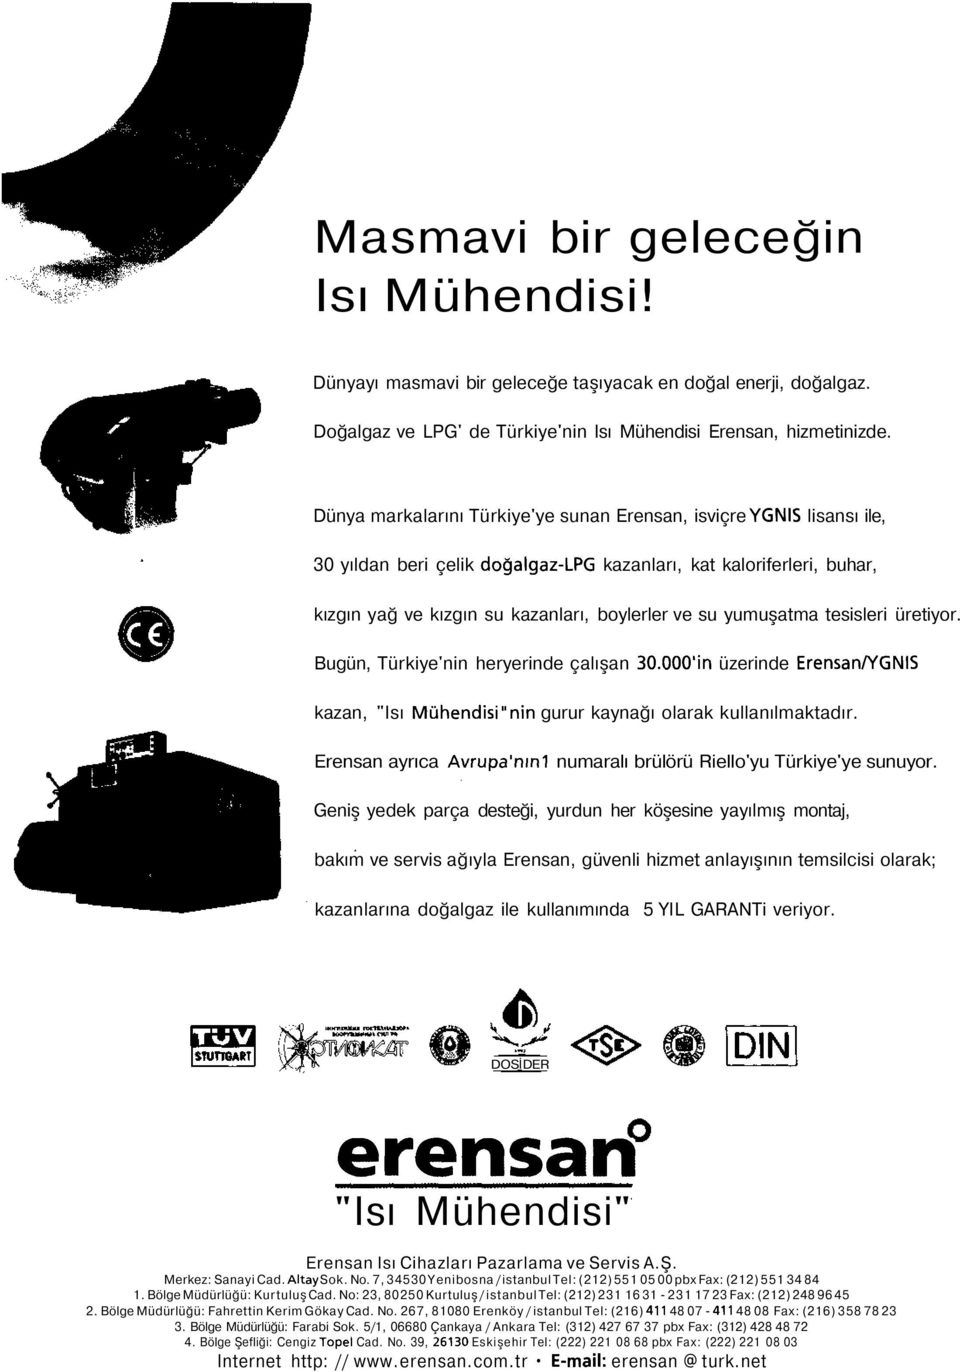 yumuşatma tesisleri üretiyor. Bugün, Türkiye'nin heryerinde çalışan 3.'in üzerinde Erensan/YGNIS kazan, "Isı Mühendisi"nin gurur kaynağı olarak kullanılmaktadır. Erensan ayrıca Avrupa'nın!